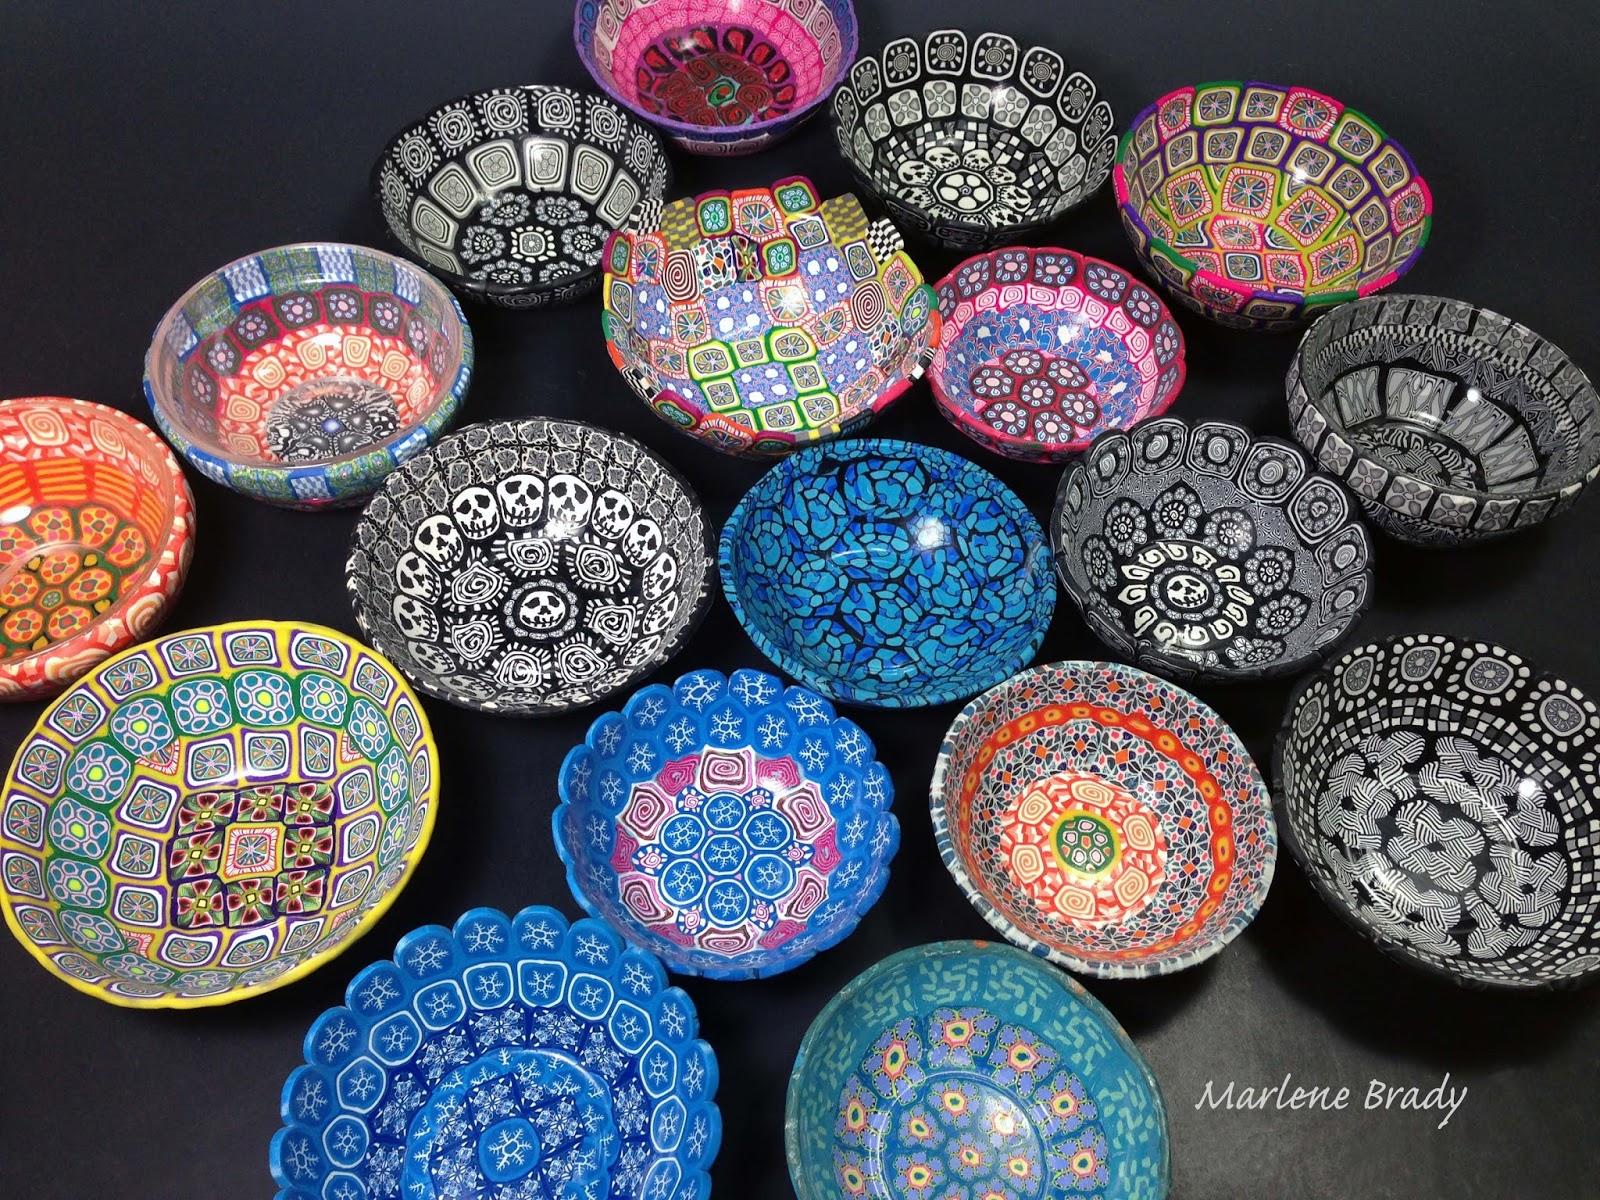 Marlene Brady: Polymer Clay Bowls